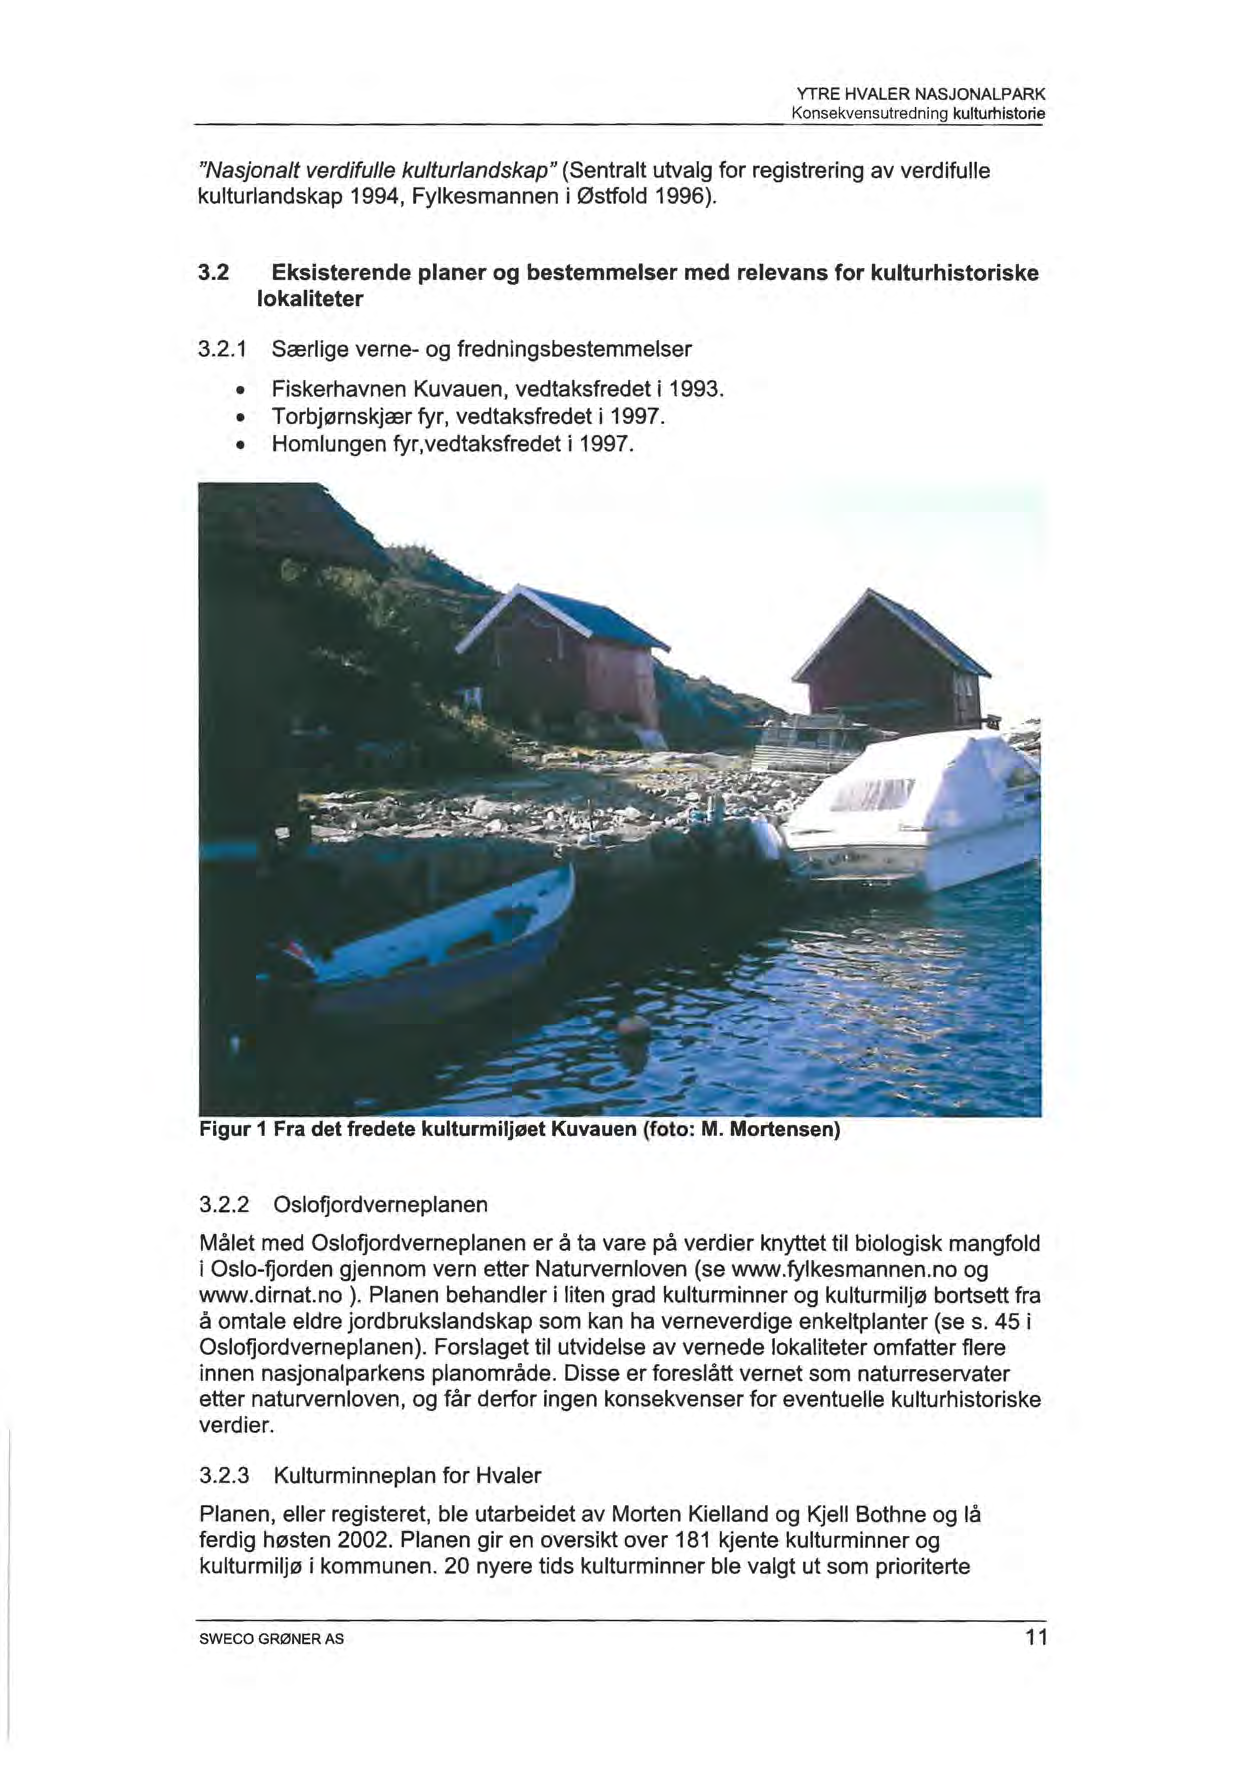 "Nasjonalt verdifulle kulturlandskap" (Sentralt utvalg for registrering av verdifulle kulturlandskap 1994, Fylkesmannen i Østfold 1996). 3.